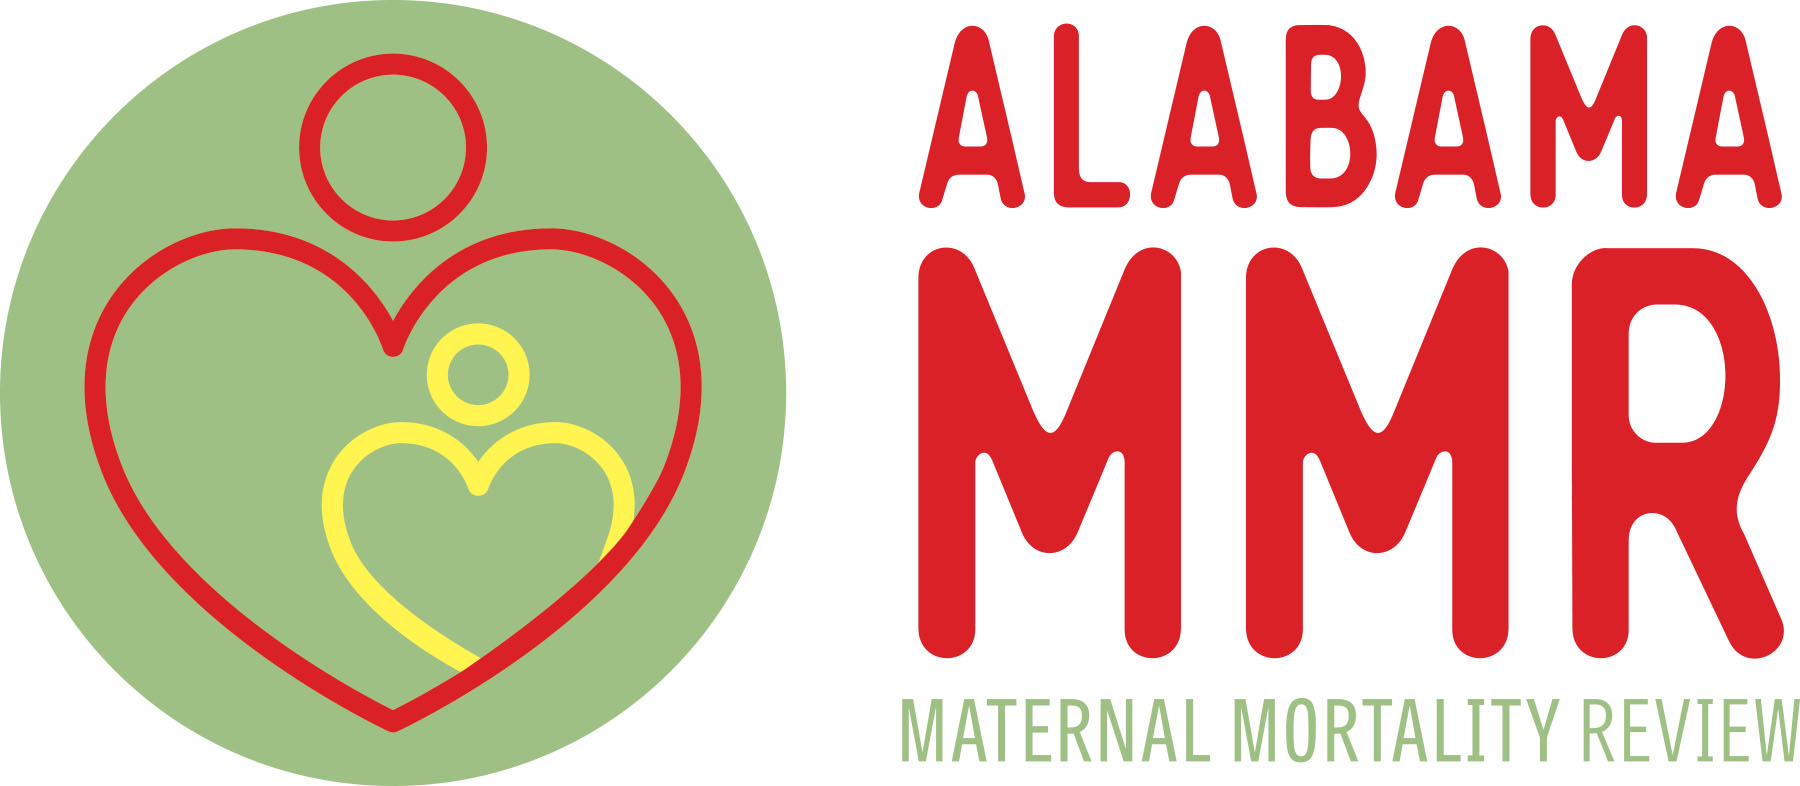 Maternal Mortality Review Logo